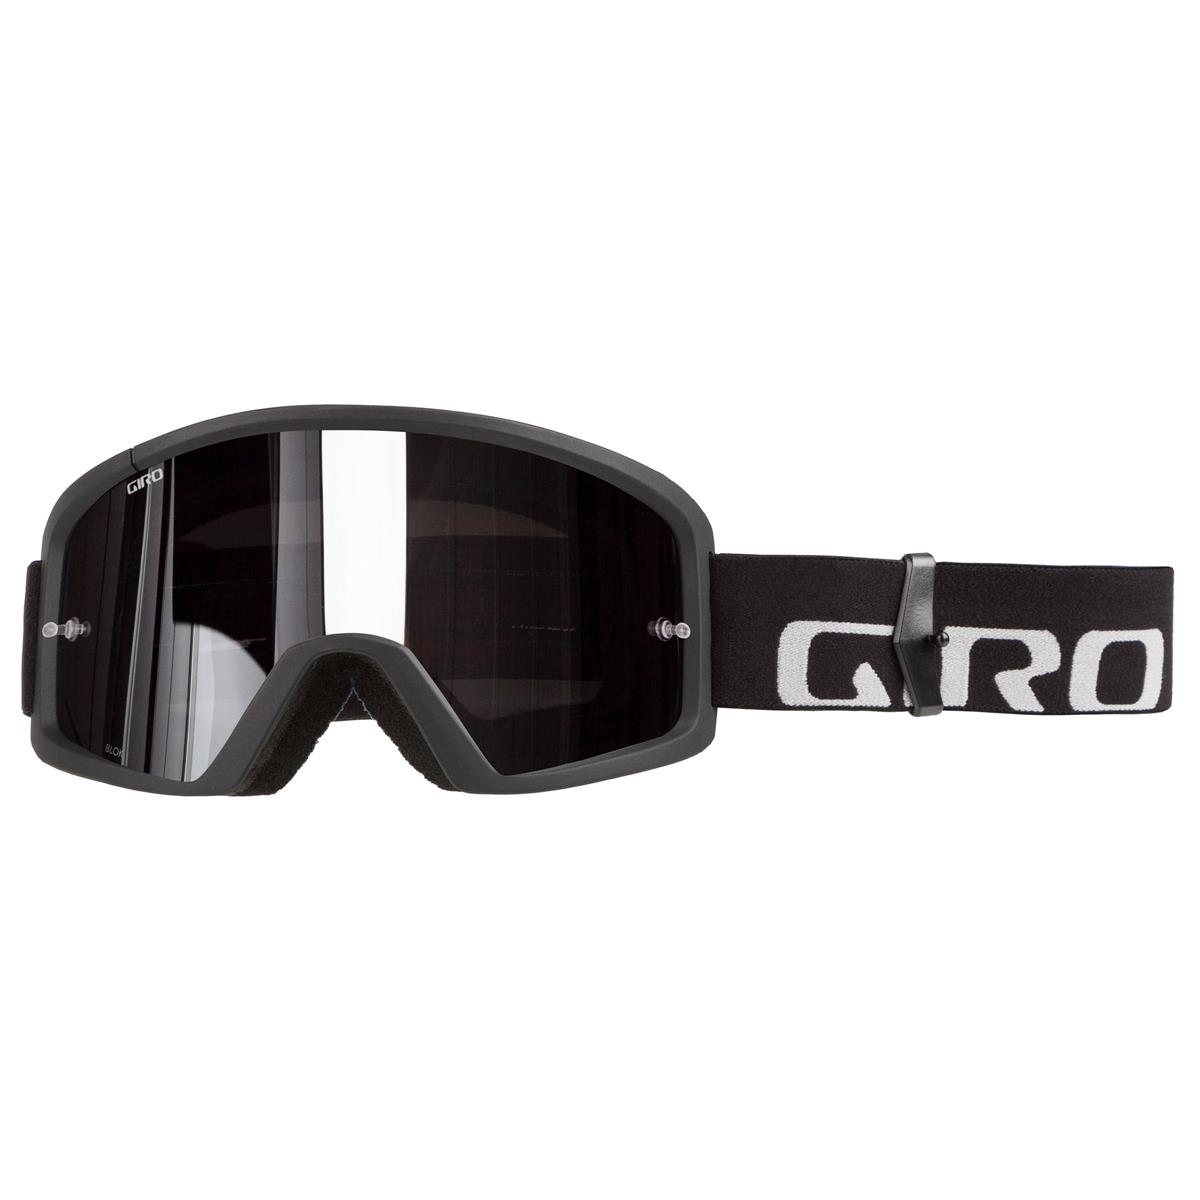 Giro Crossbrille Blok Schwarz/Grau - Grau/Silber Flash Klar Anti-Fog